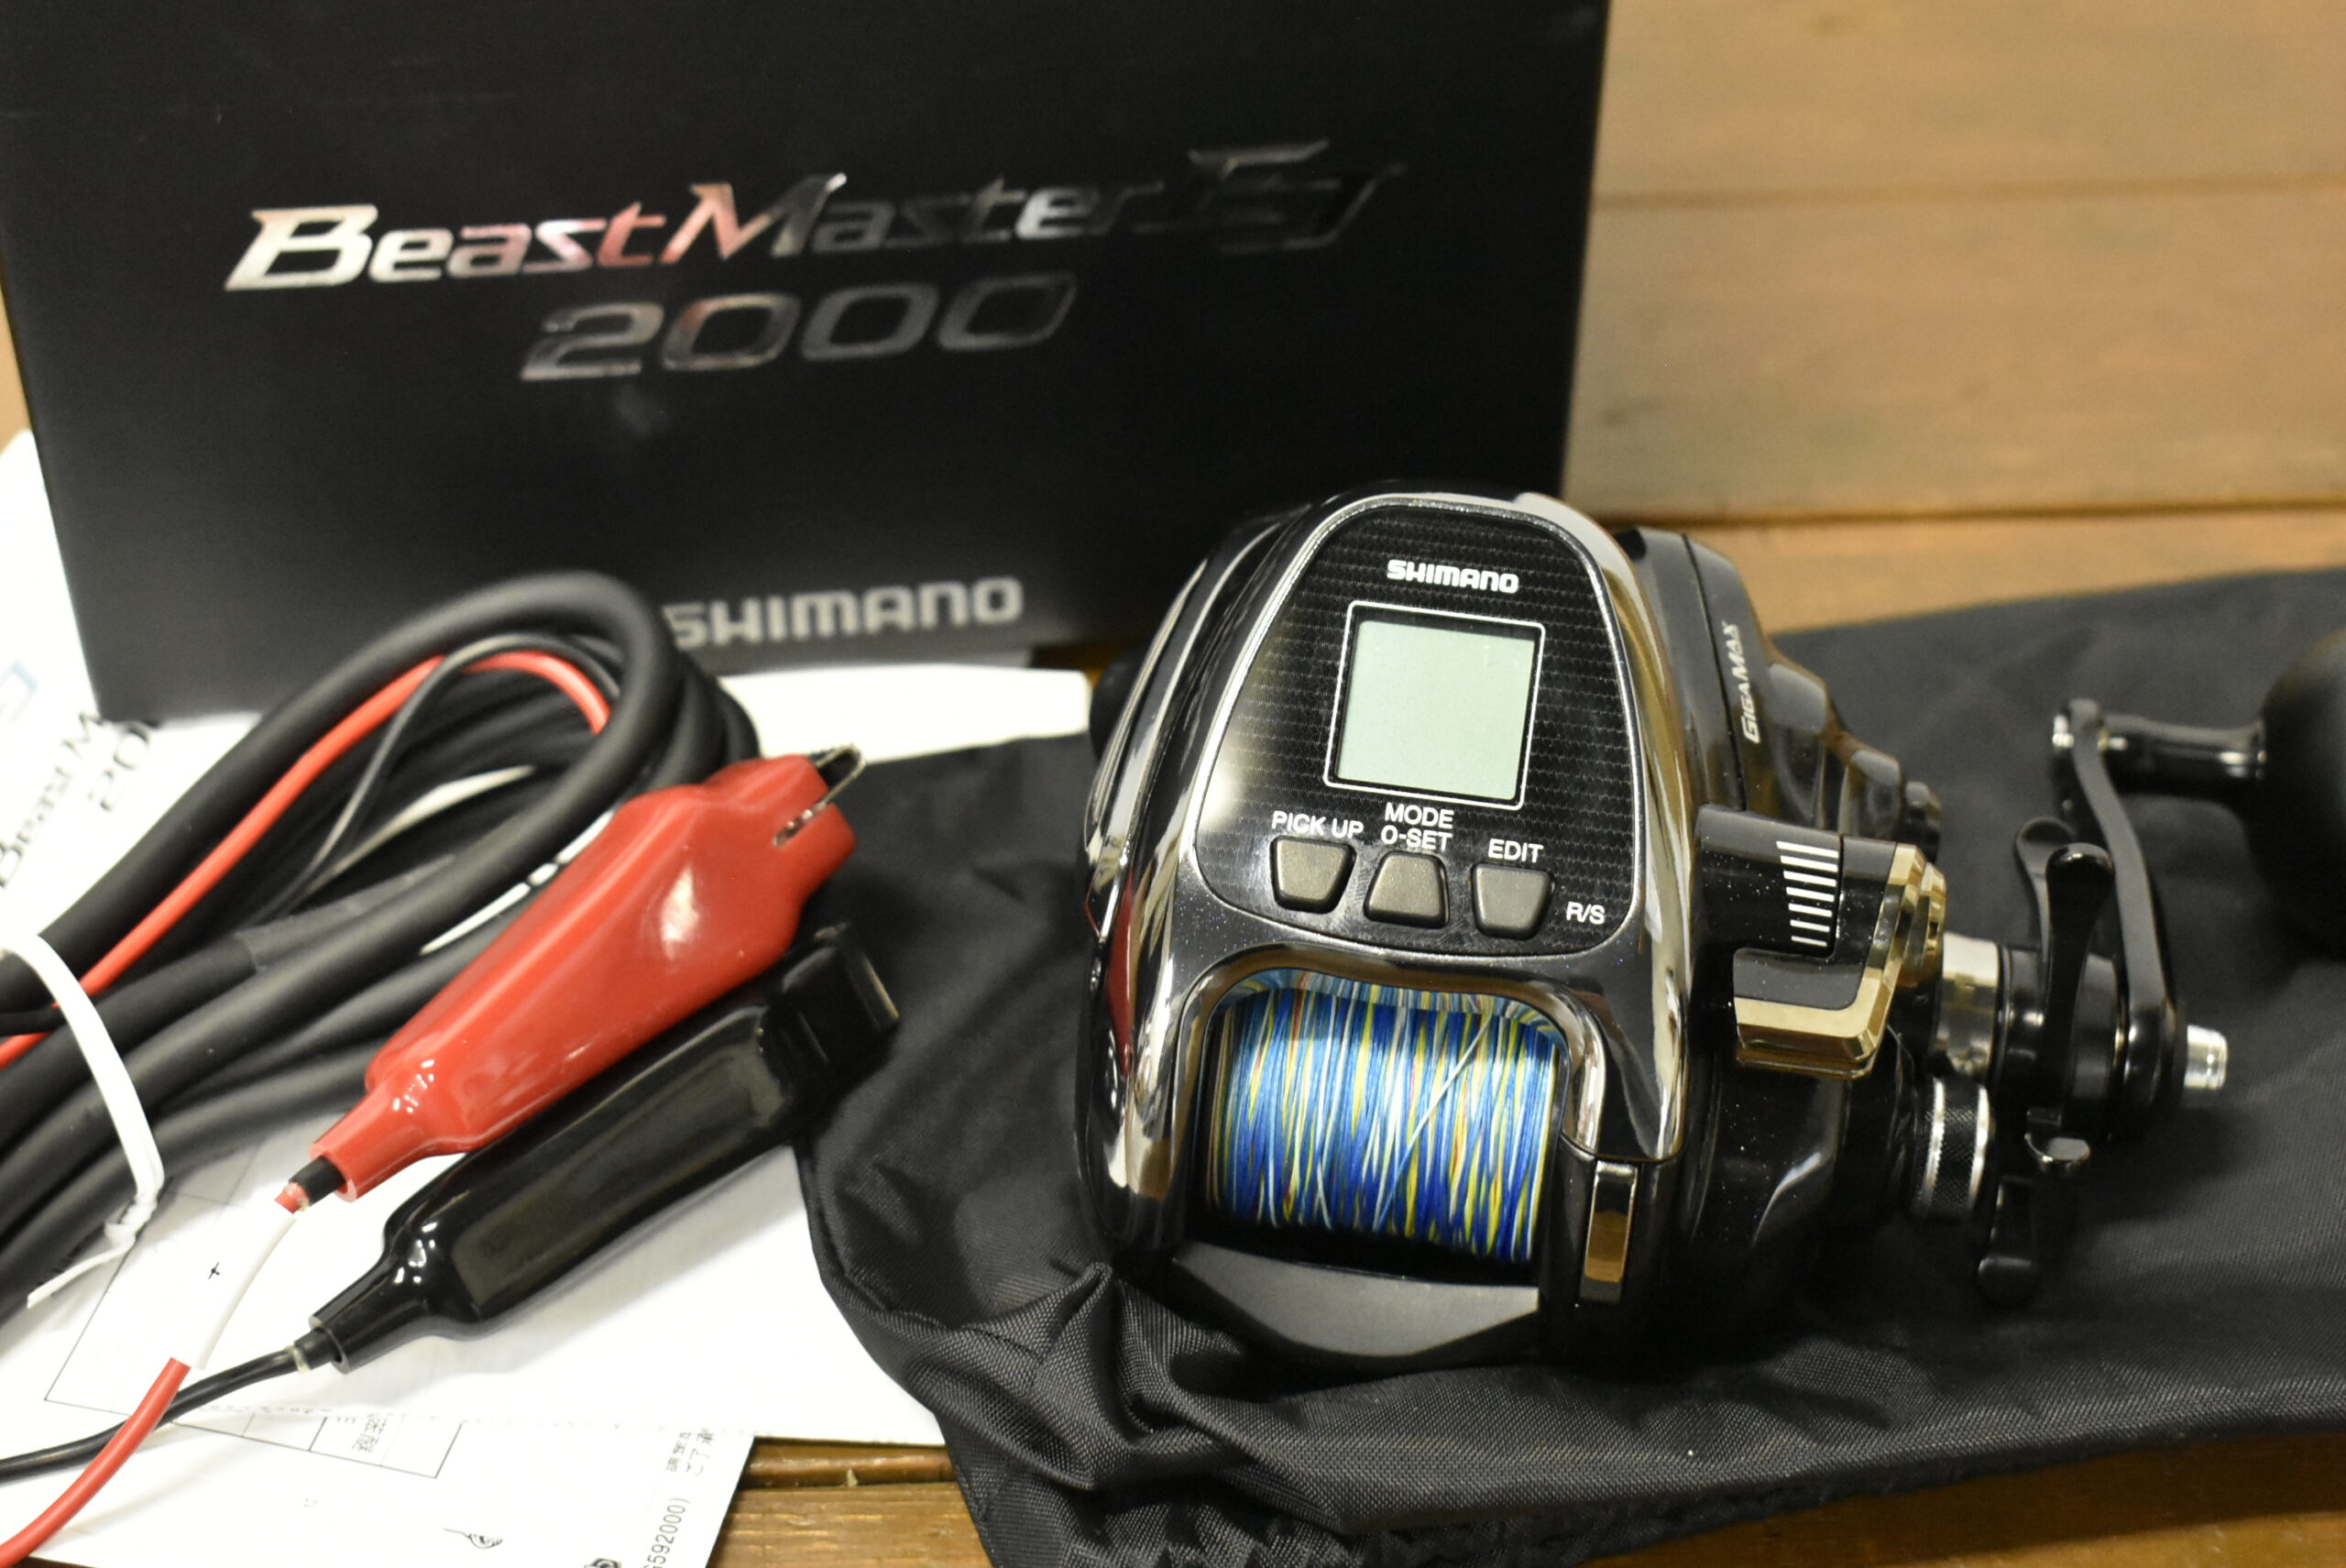 シマノ 19 ビーストマスター 2000EJ 買取価格 | 釣具買取ナンバーワン